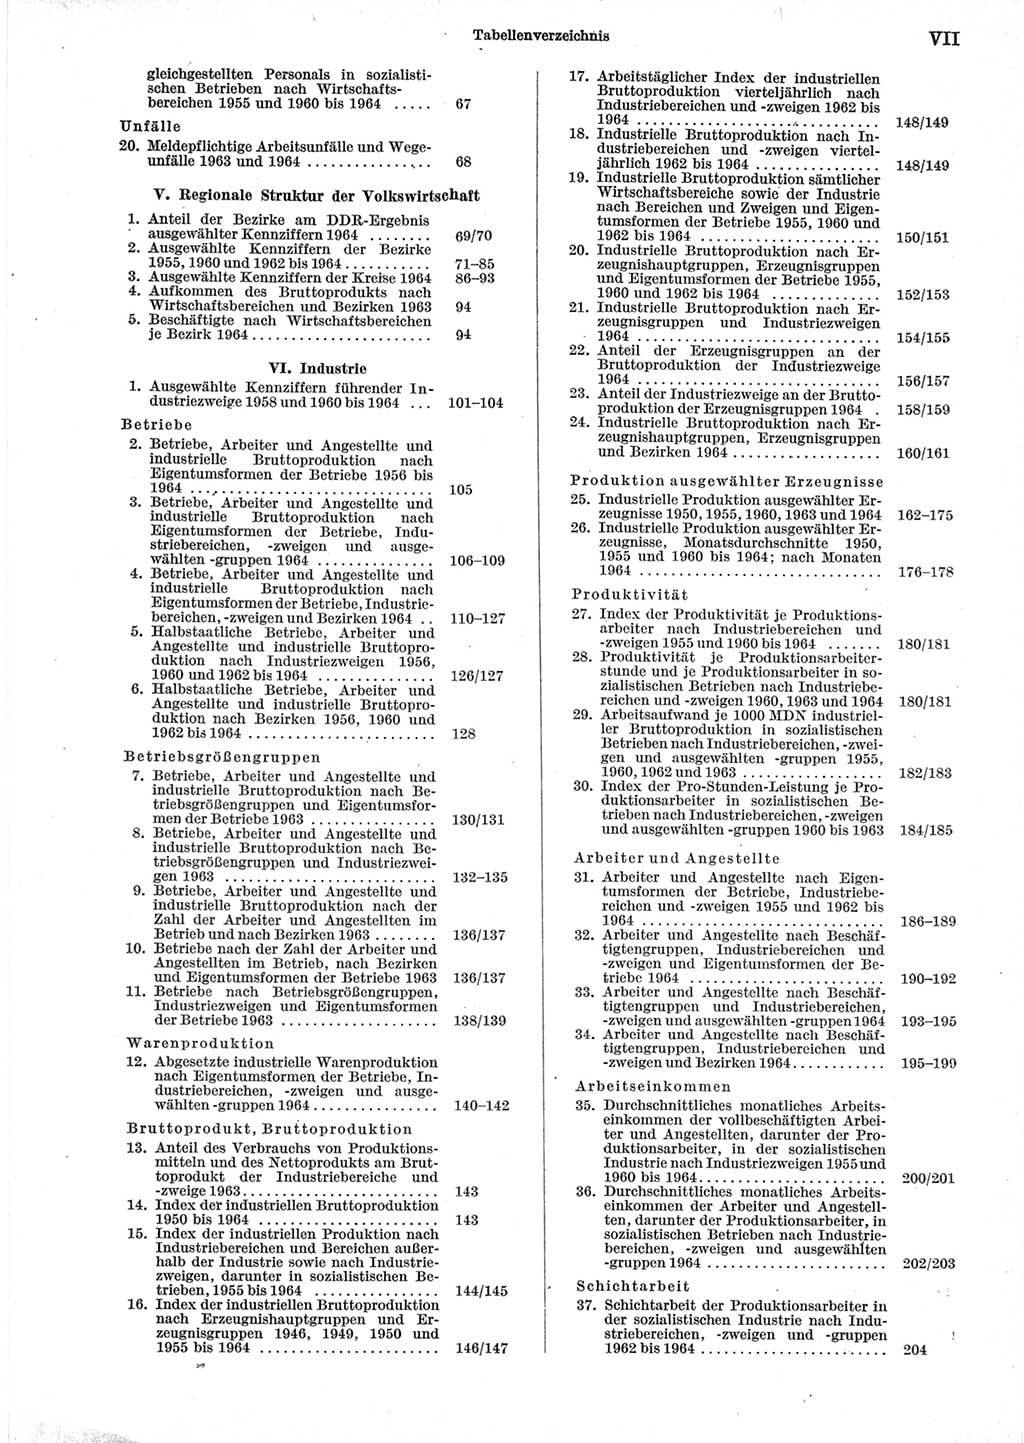 Statistisches Jahrbuch der Deutschen Demokratischen Republik (DDR) 1965, Seite 7 (Stat. Jb. DDR 1965, S. 7)